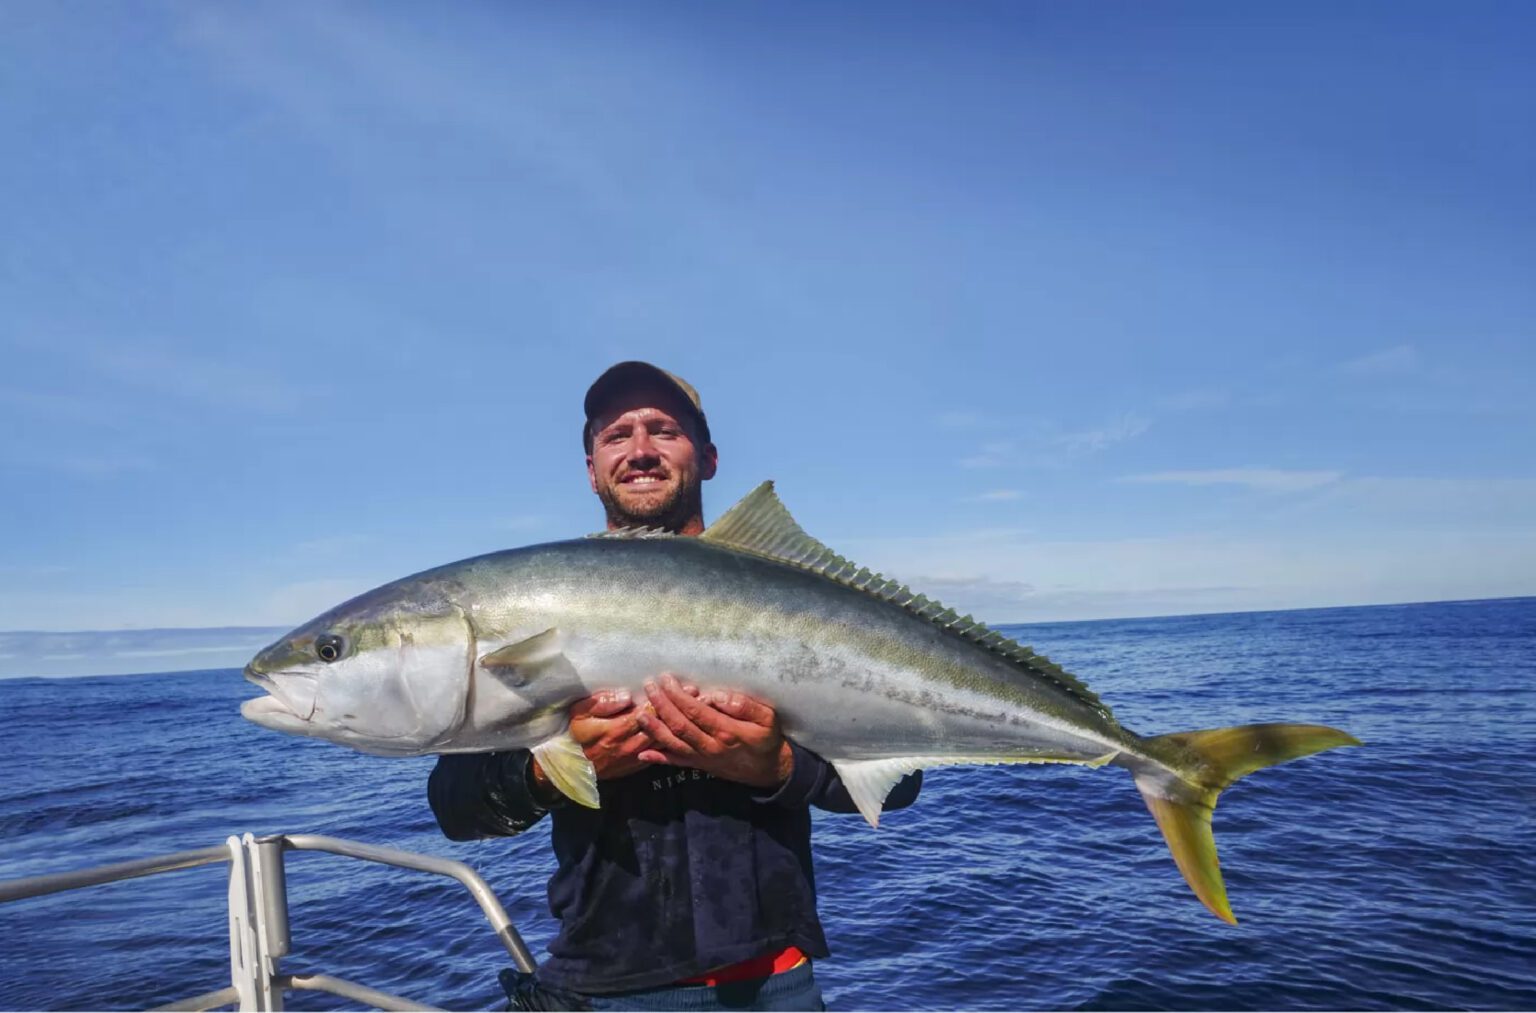 A big fish caught on deepsea fishing in Dubai